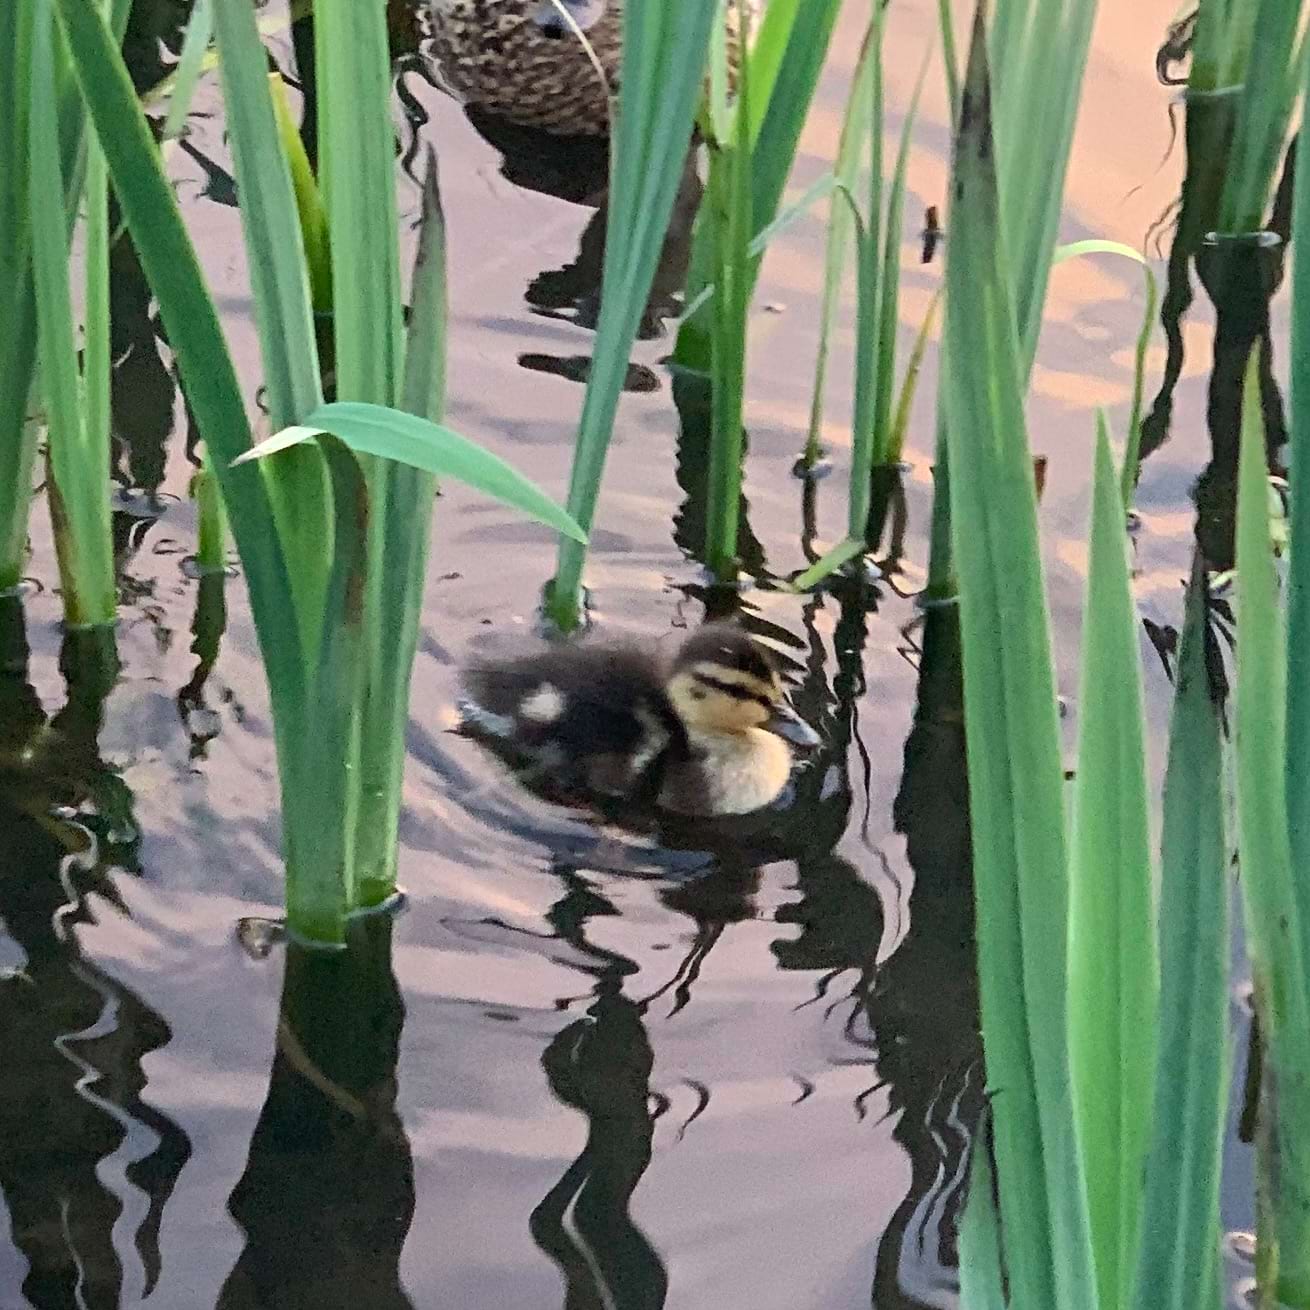 Mallard chick swimming amping reeds